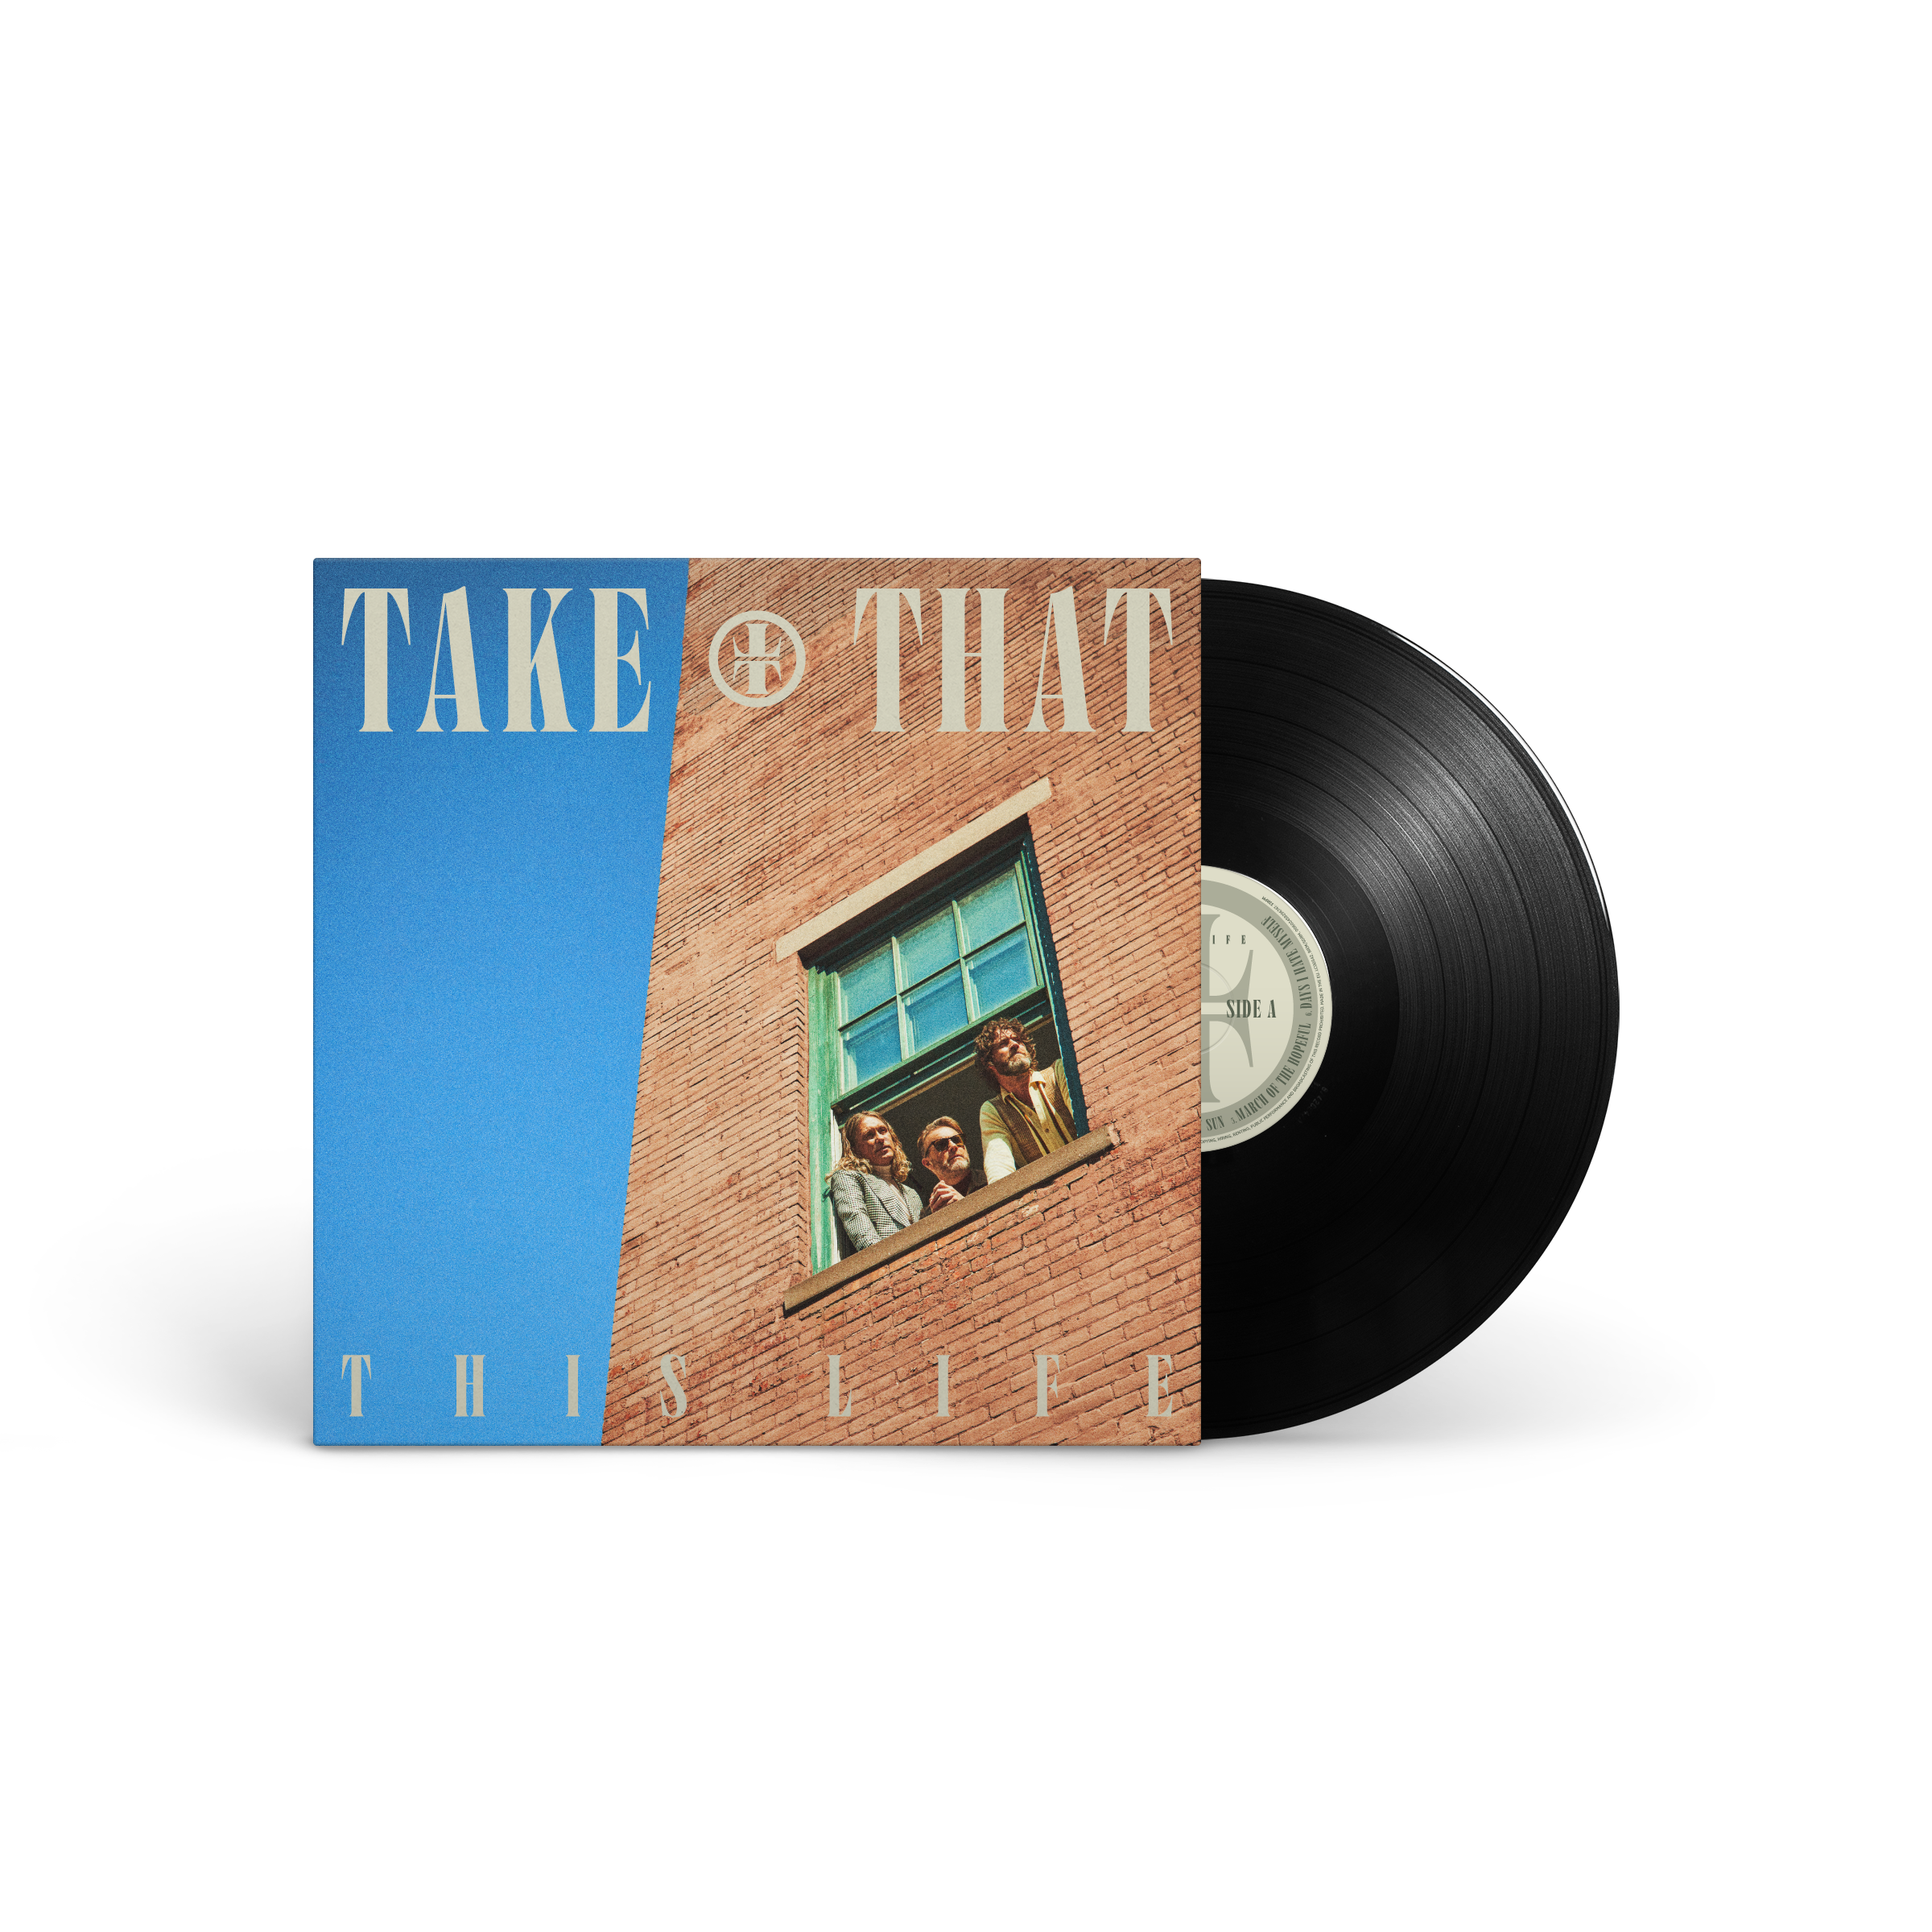 Take That - Vinyl LP